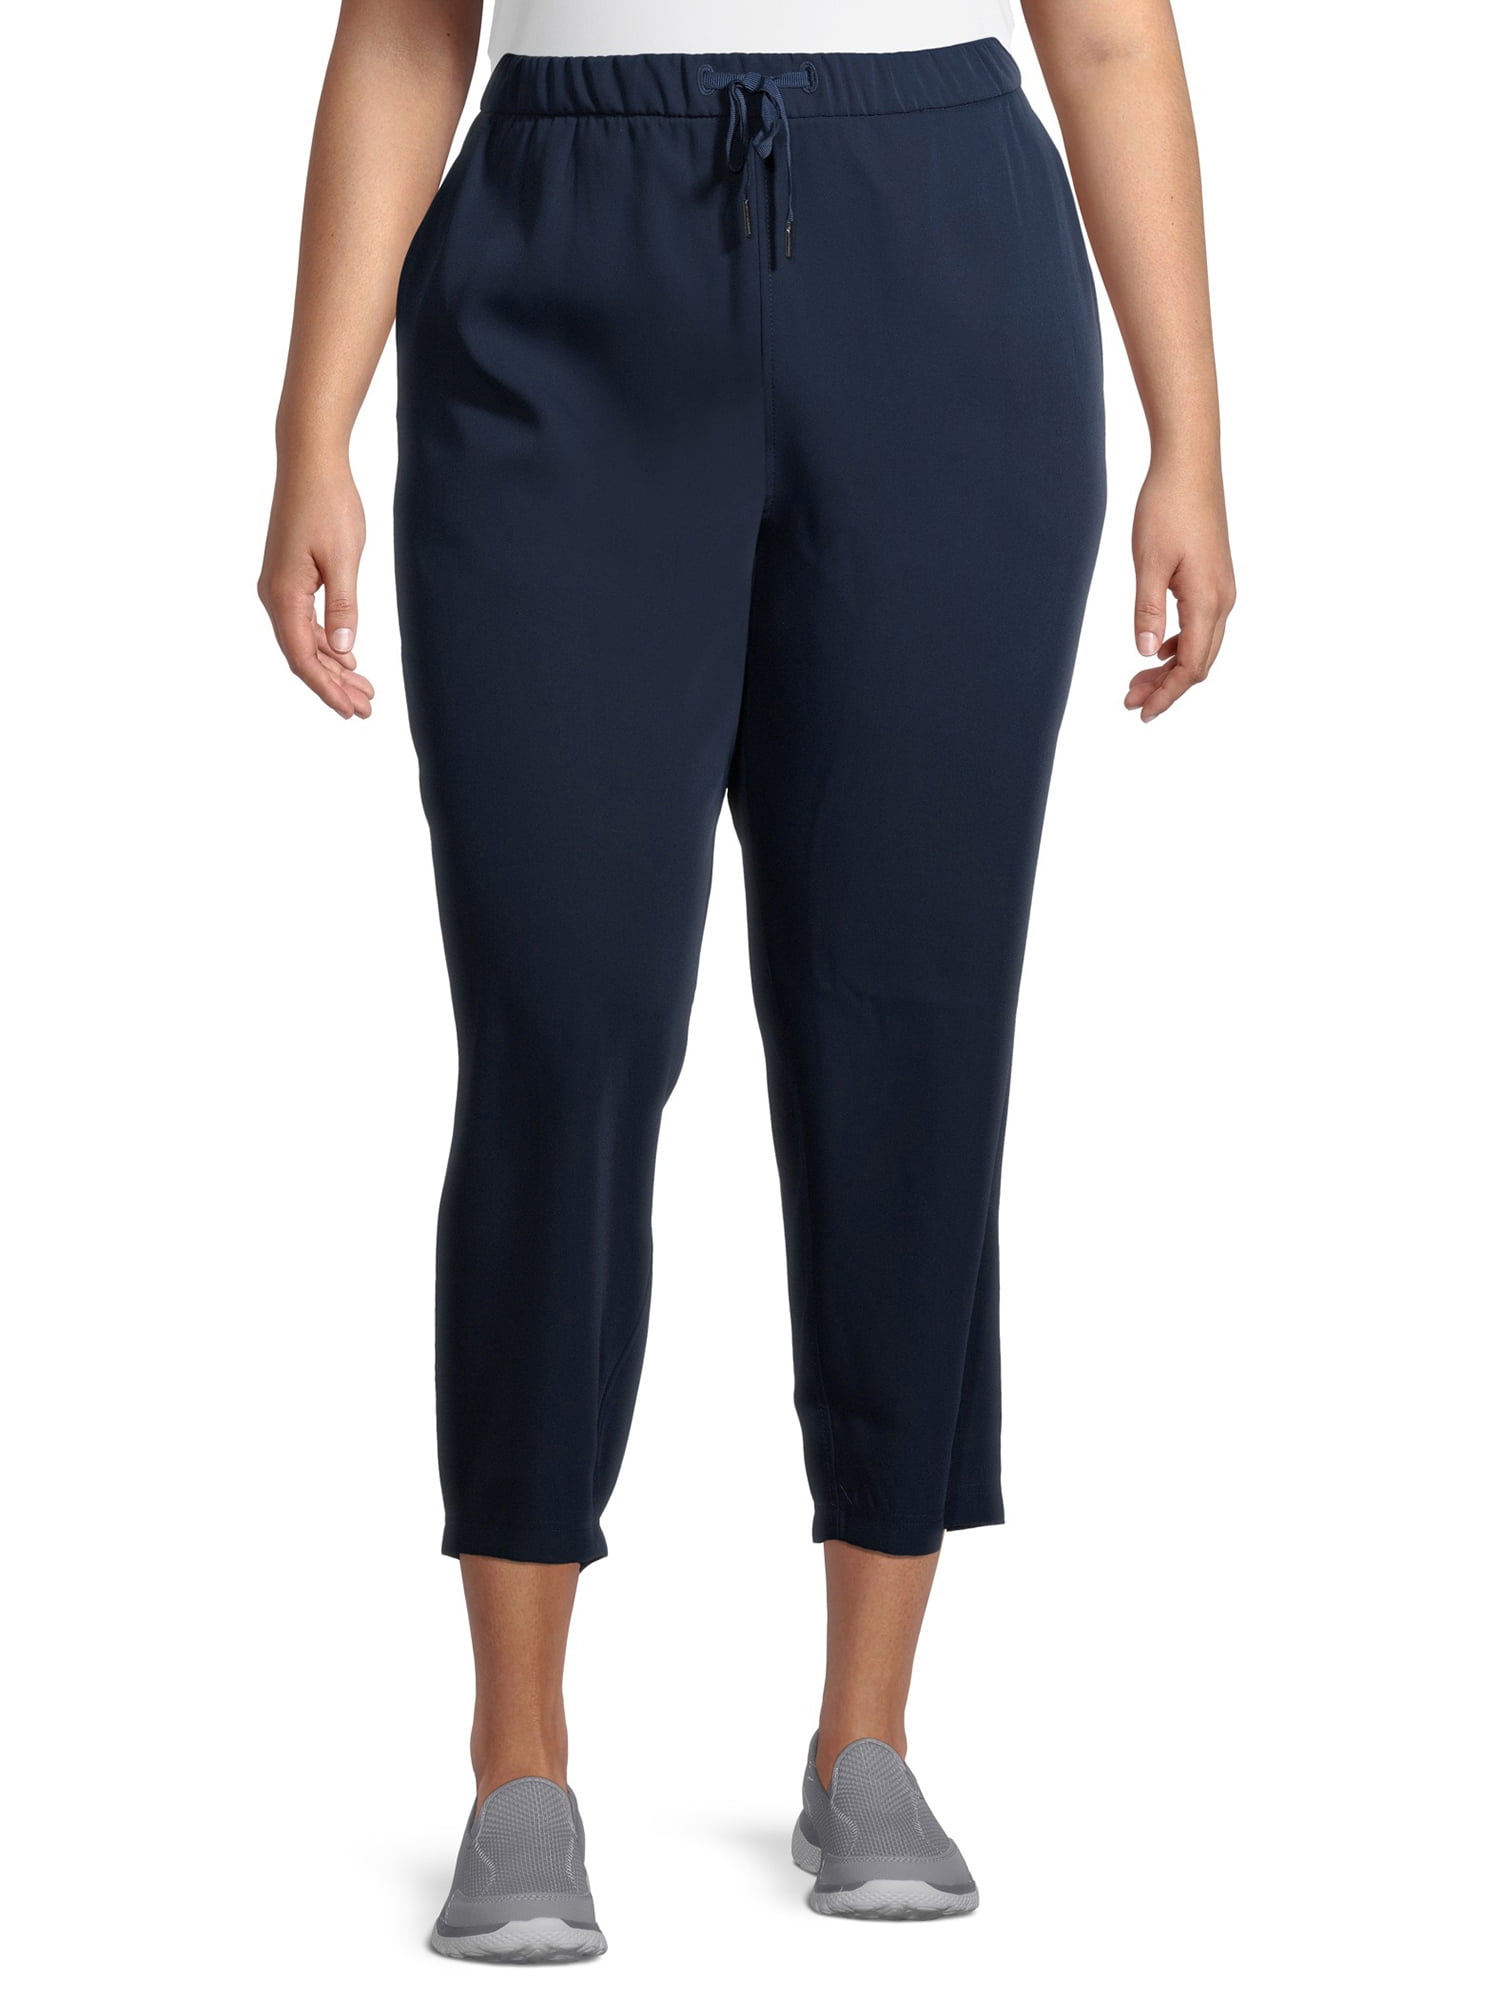 Avia Women's Plus Size Active Woven Commuter Pants - Walmart.com